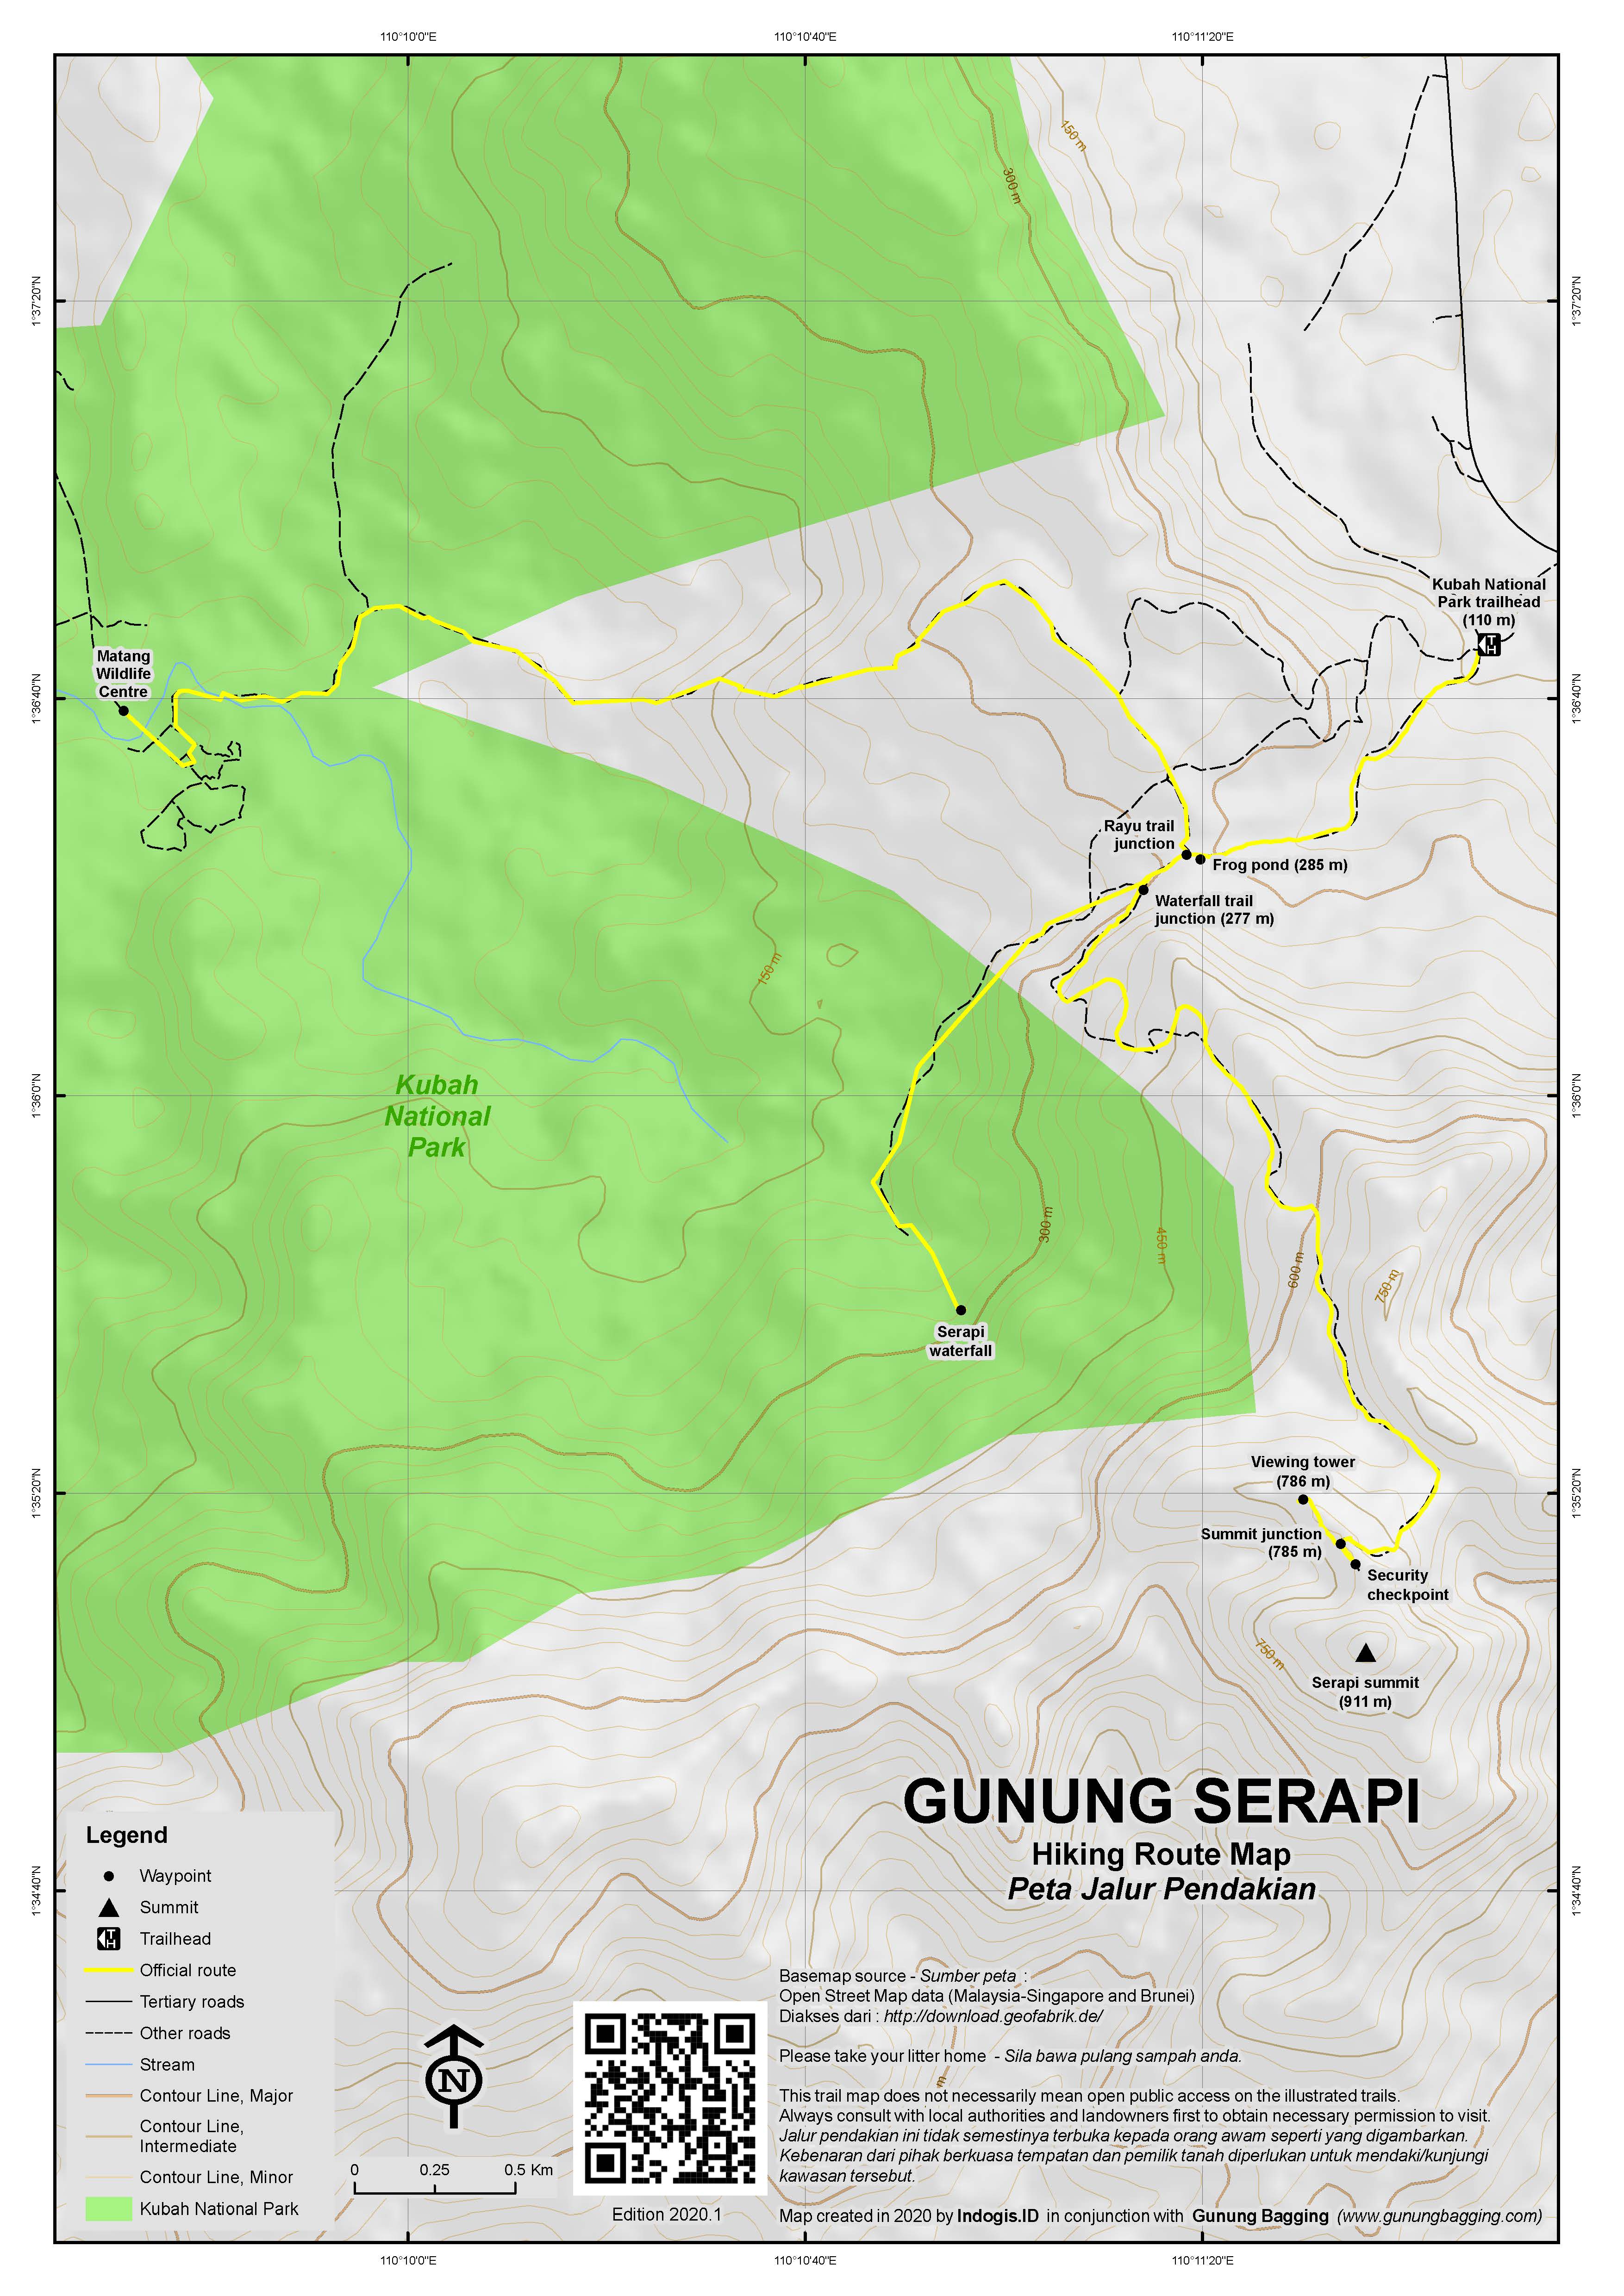 Peta Jalur Pendakian Gunung Serapi